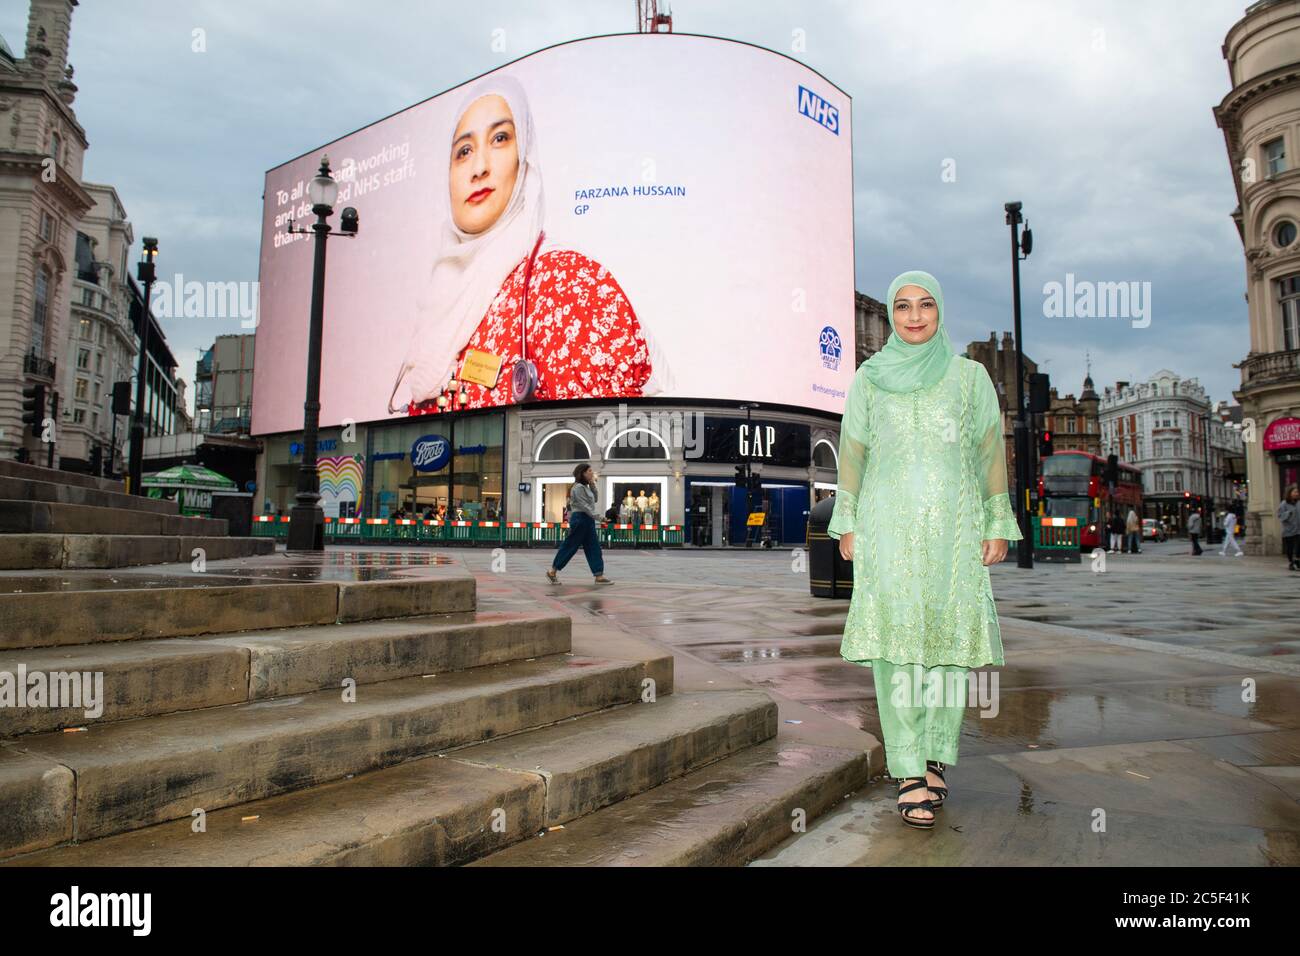 GP Farzana Hussain avec son portrait, qui fait partie d'une série prise par le photographe Rankin, comme il est exposé sur les Piccadilly Lights à Piccadilly Circus, Londres, pour marquer le 72e anniversaire du NHS. Banque D'Images